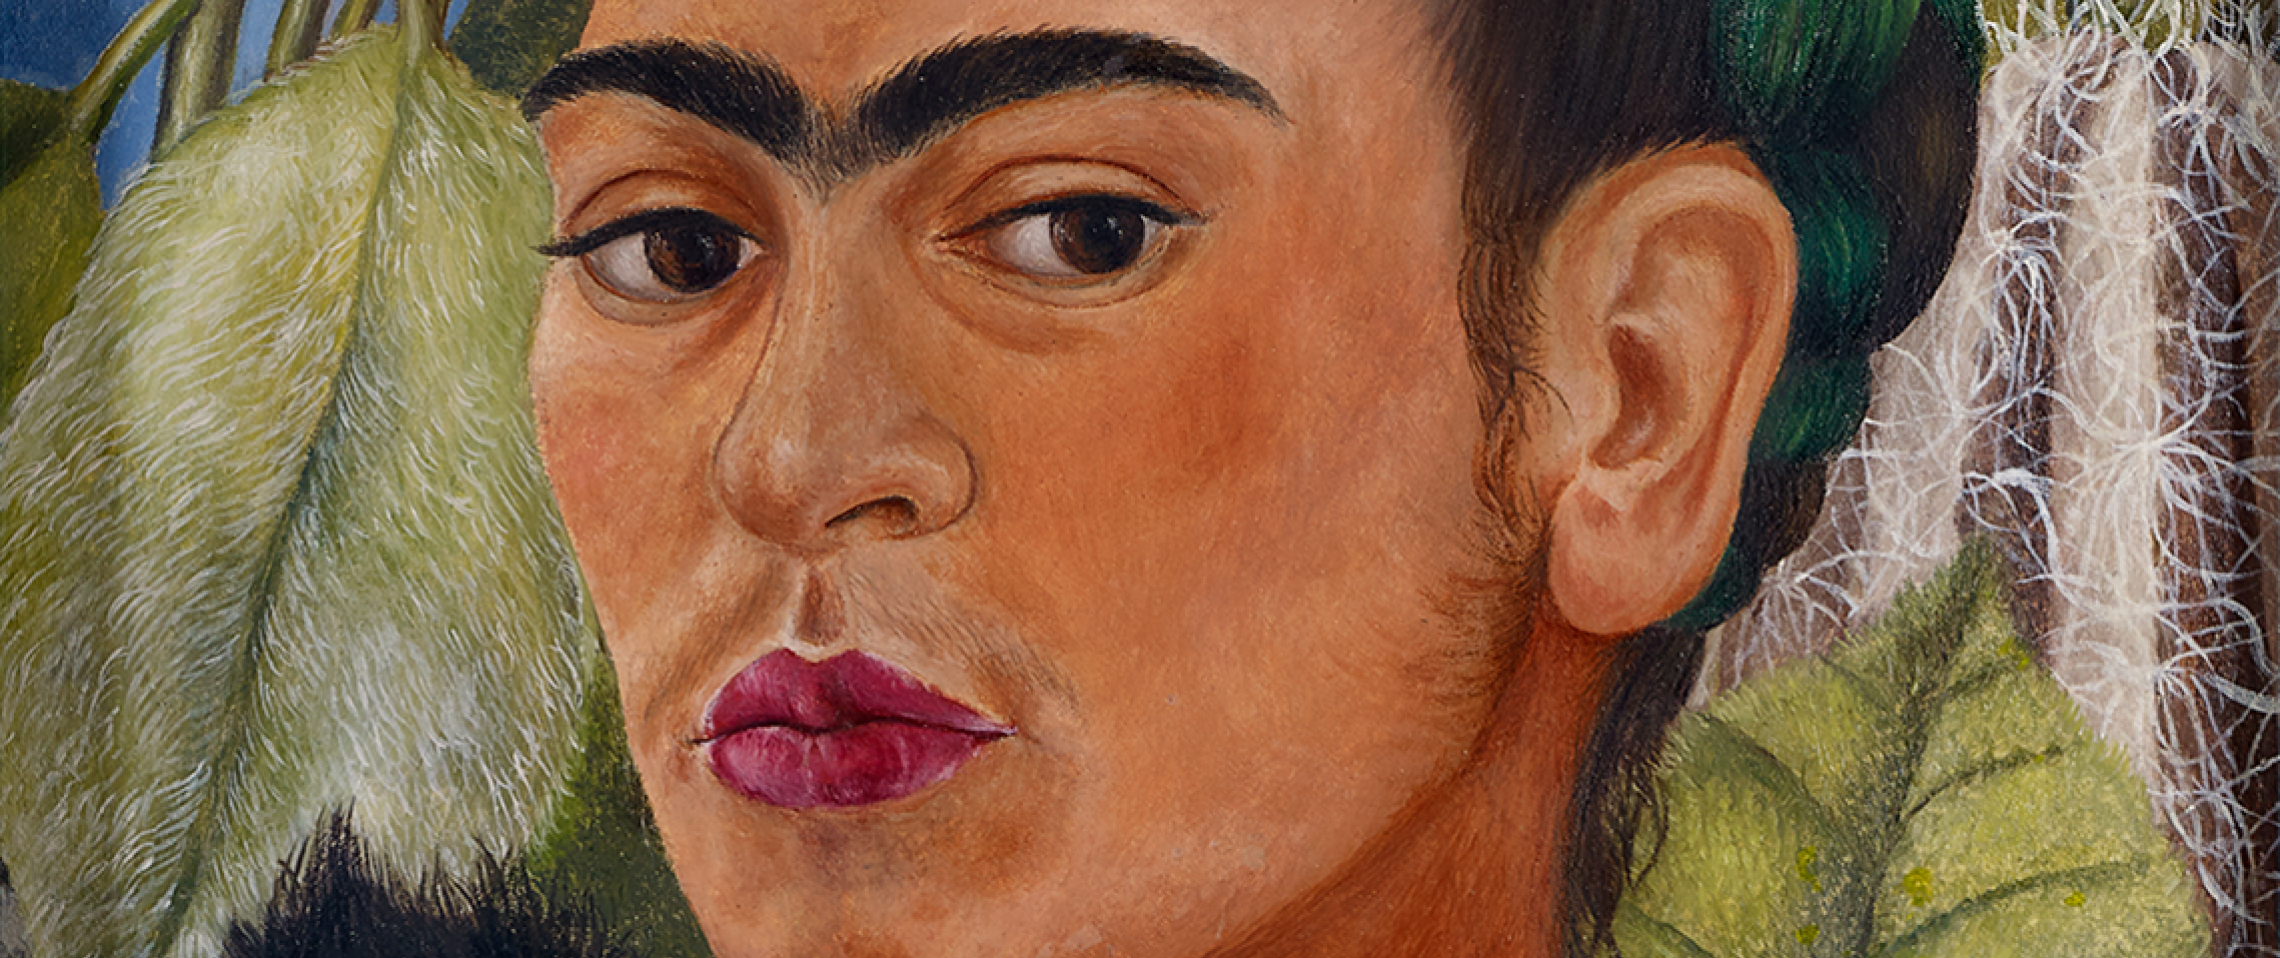 Frida Kahlo at The Dalí - Salvador Dalí Museum